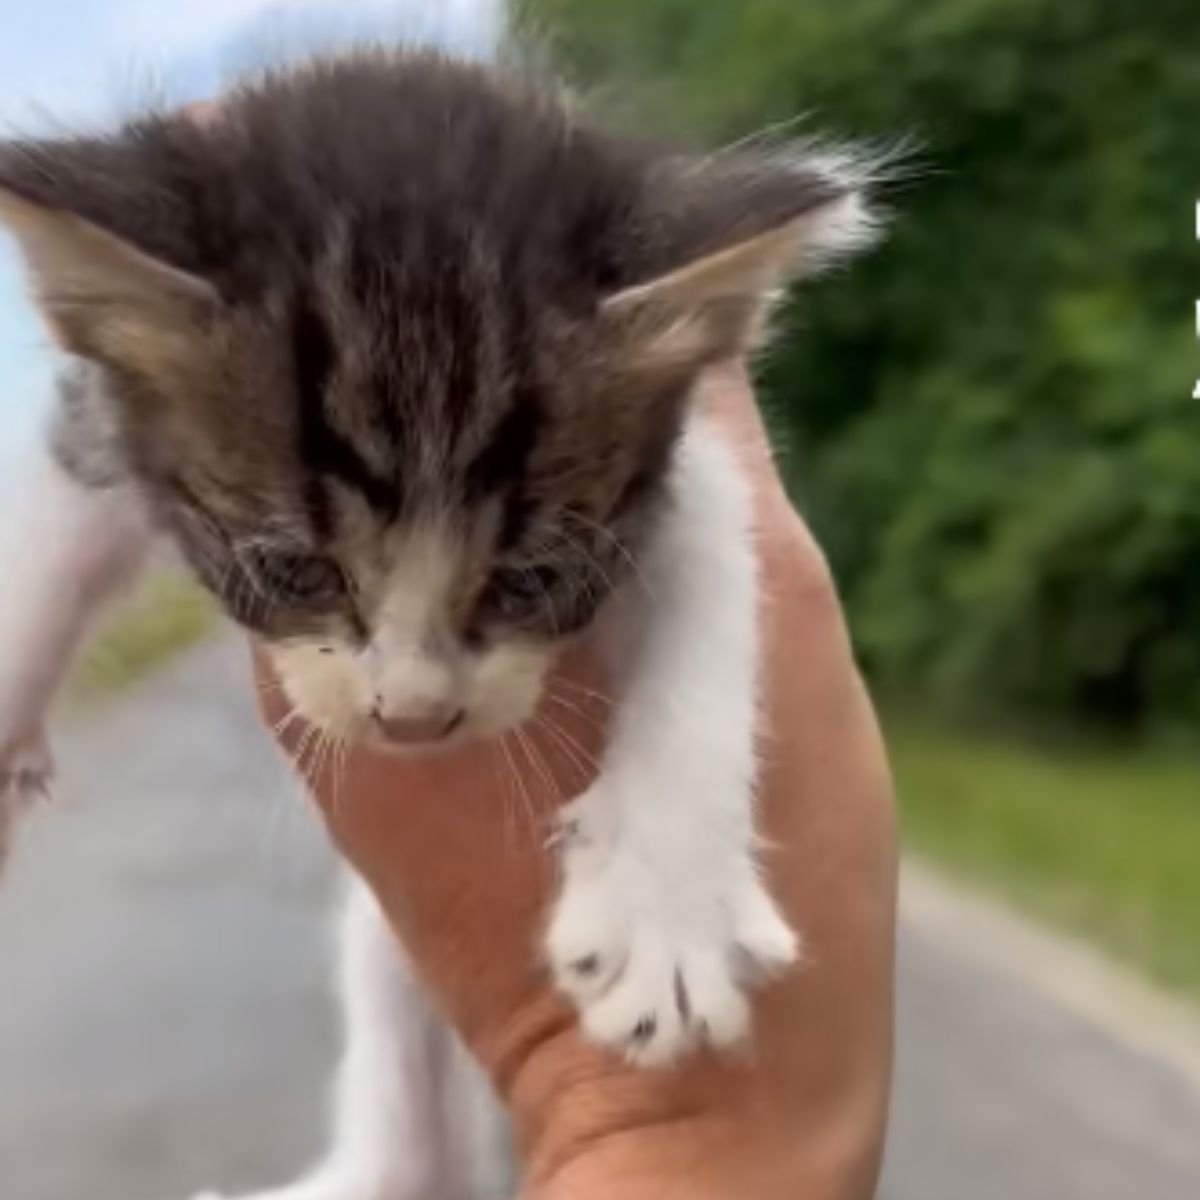 photo of kitten held in hand